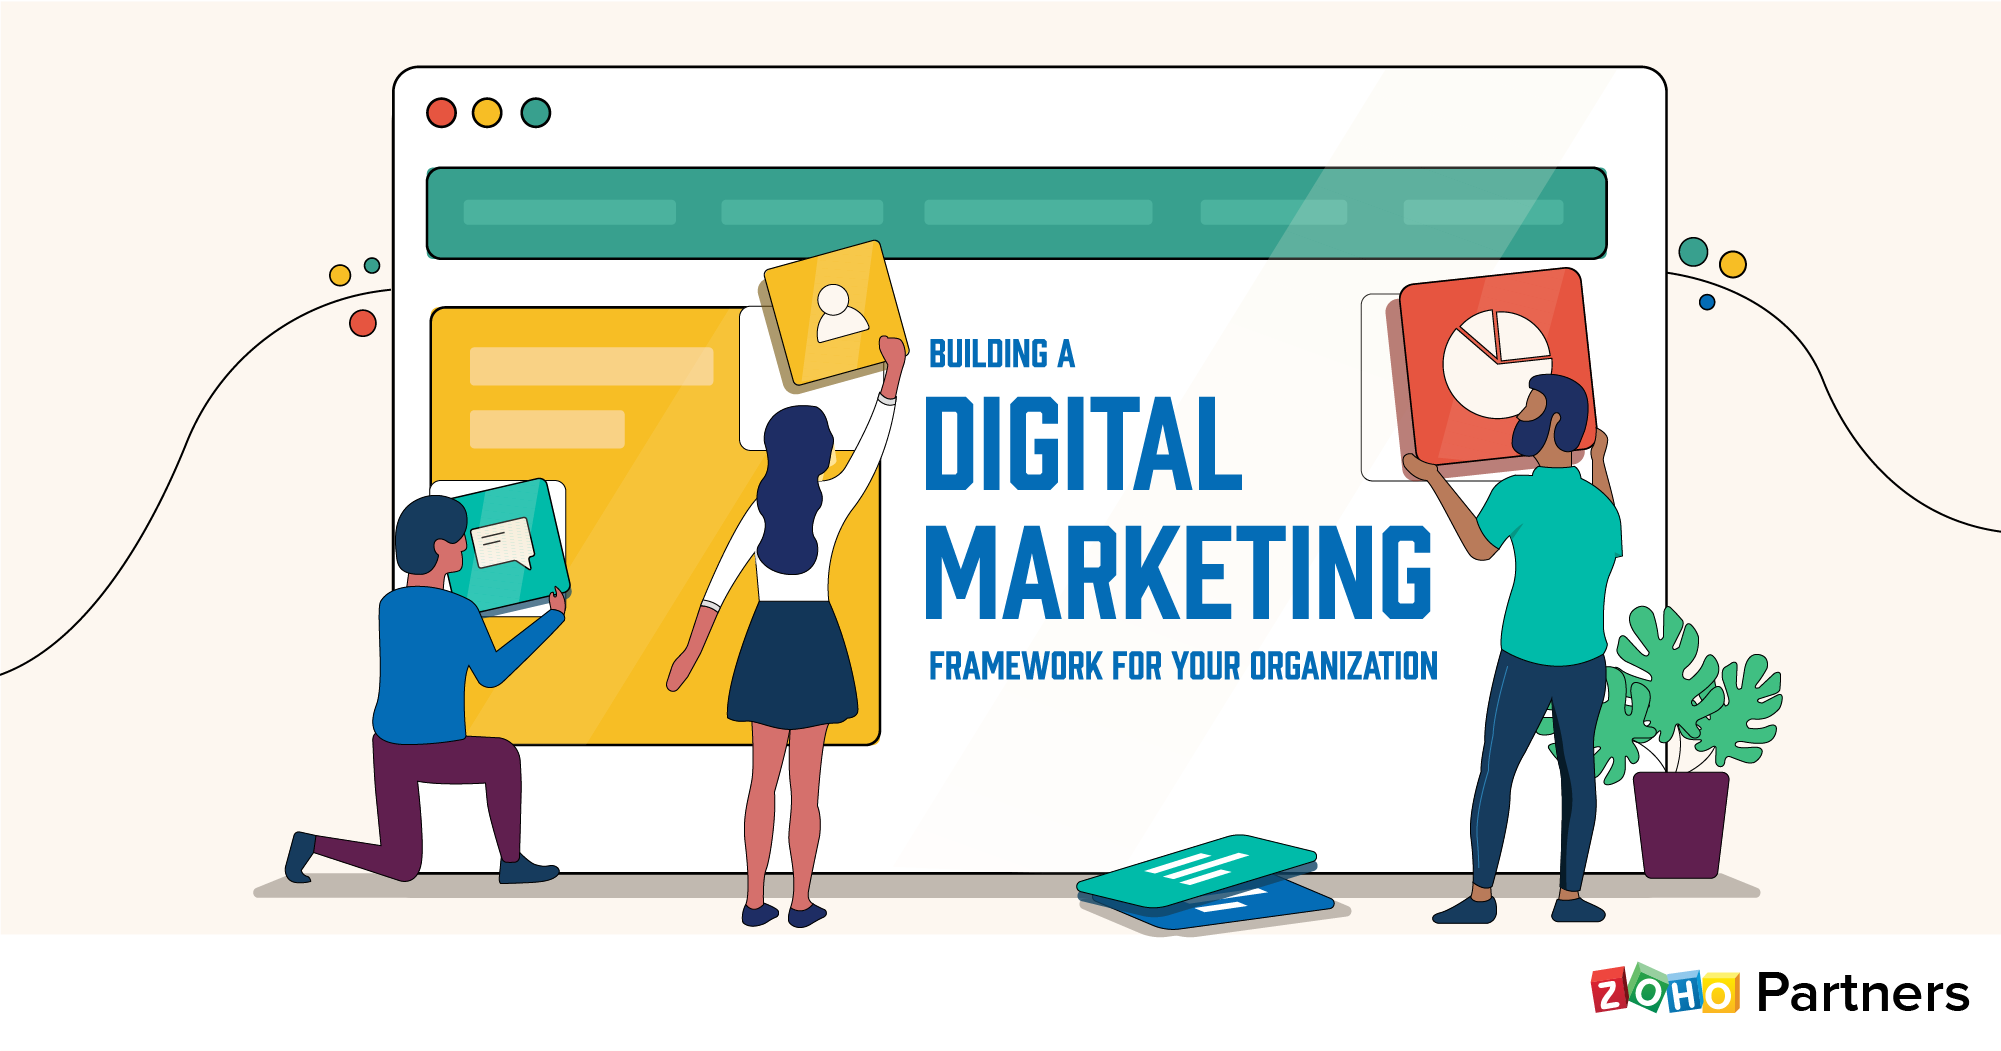 Building a digital marketing framework for your organization